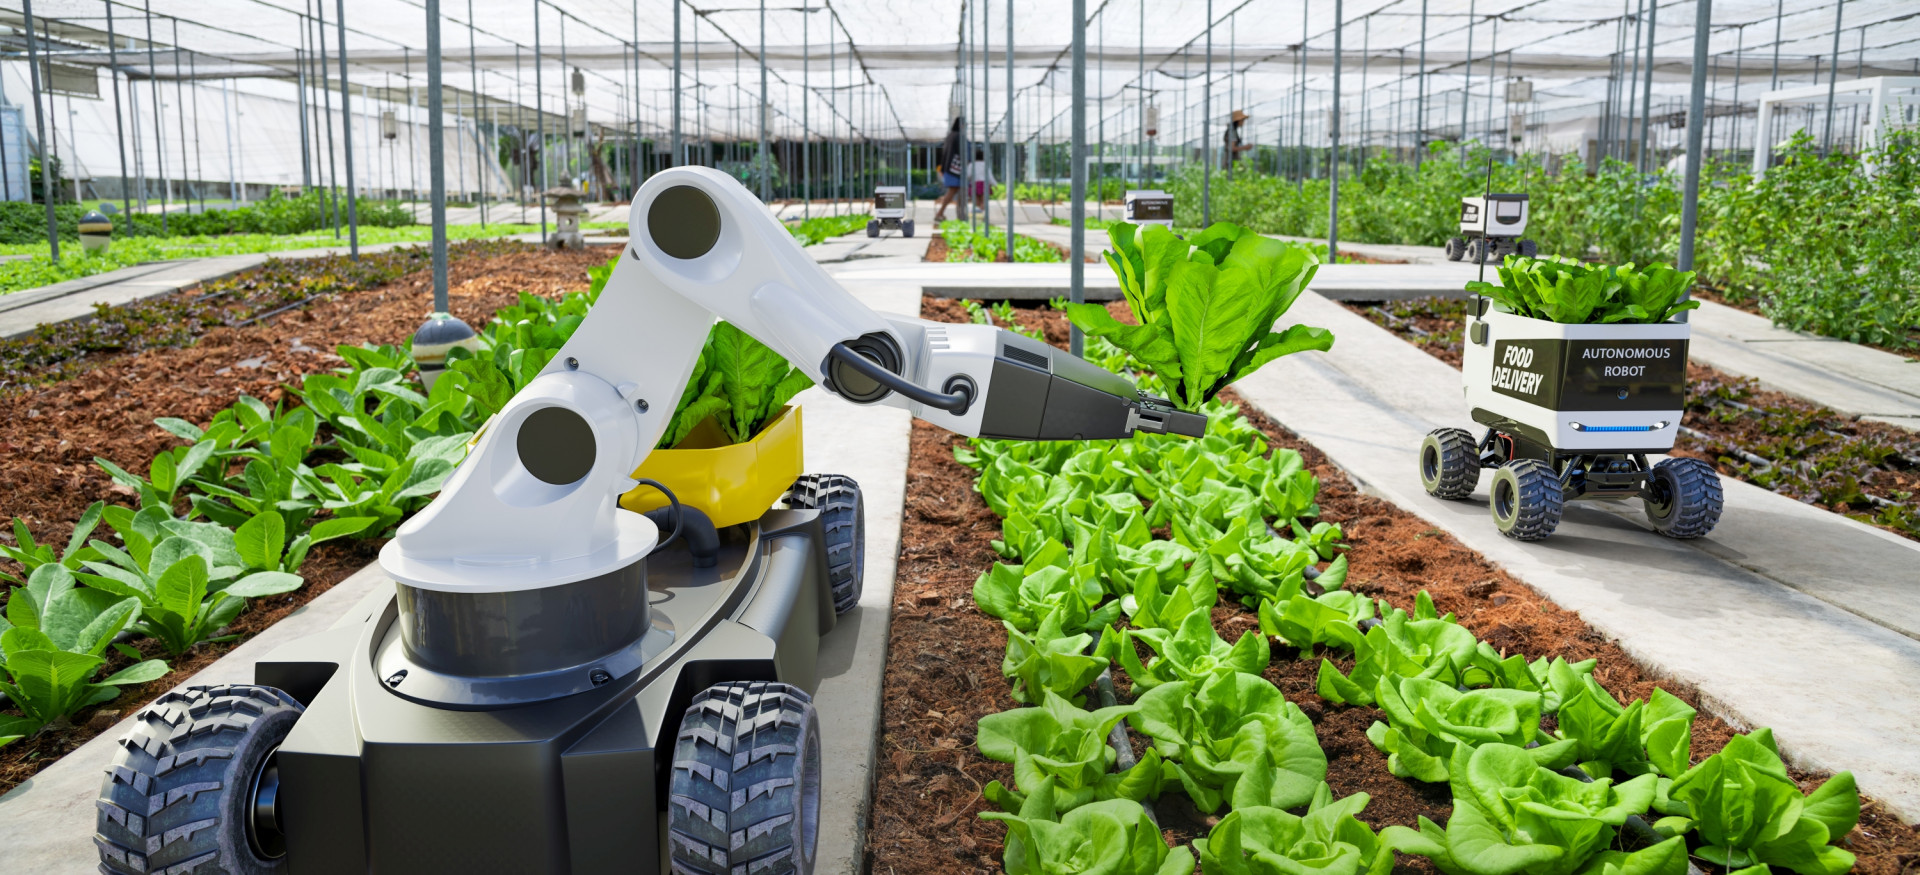 In einer Smart Farm erntet ein Agrar-Roboter Salat in einem Gewächshaus, ein autonomes Fahrzeug transportiert das Erntegut zur Sammelstelle.